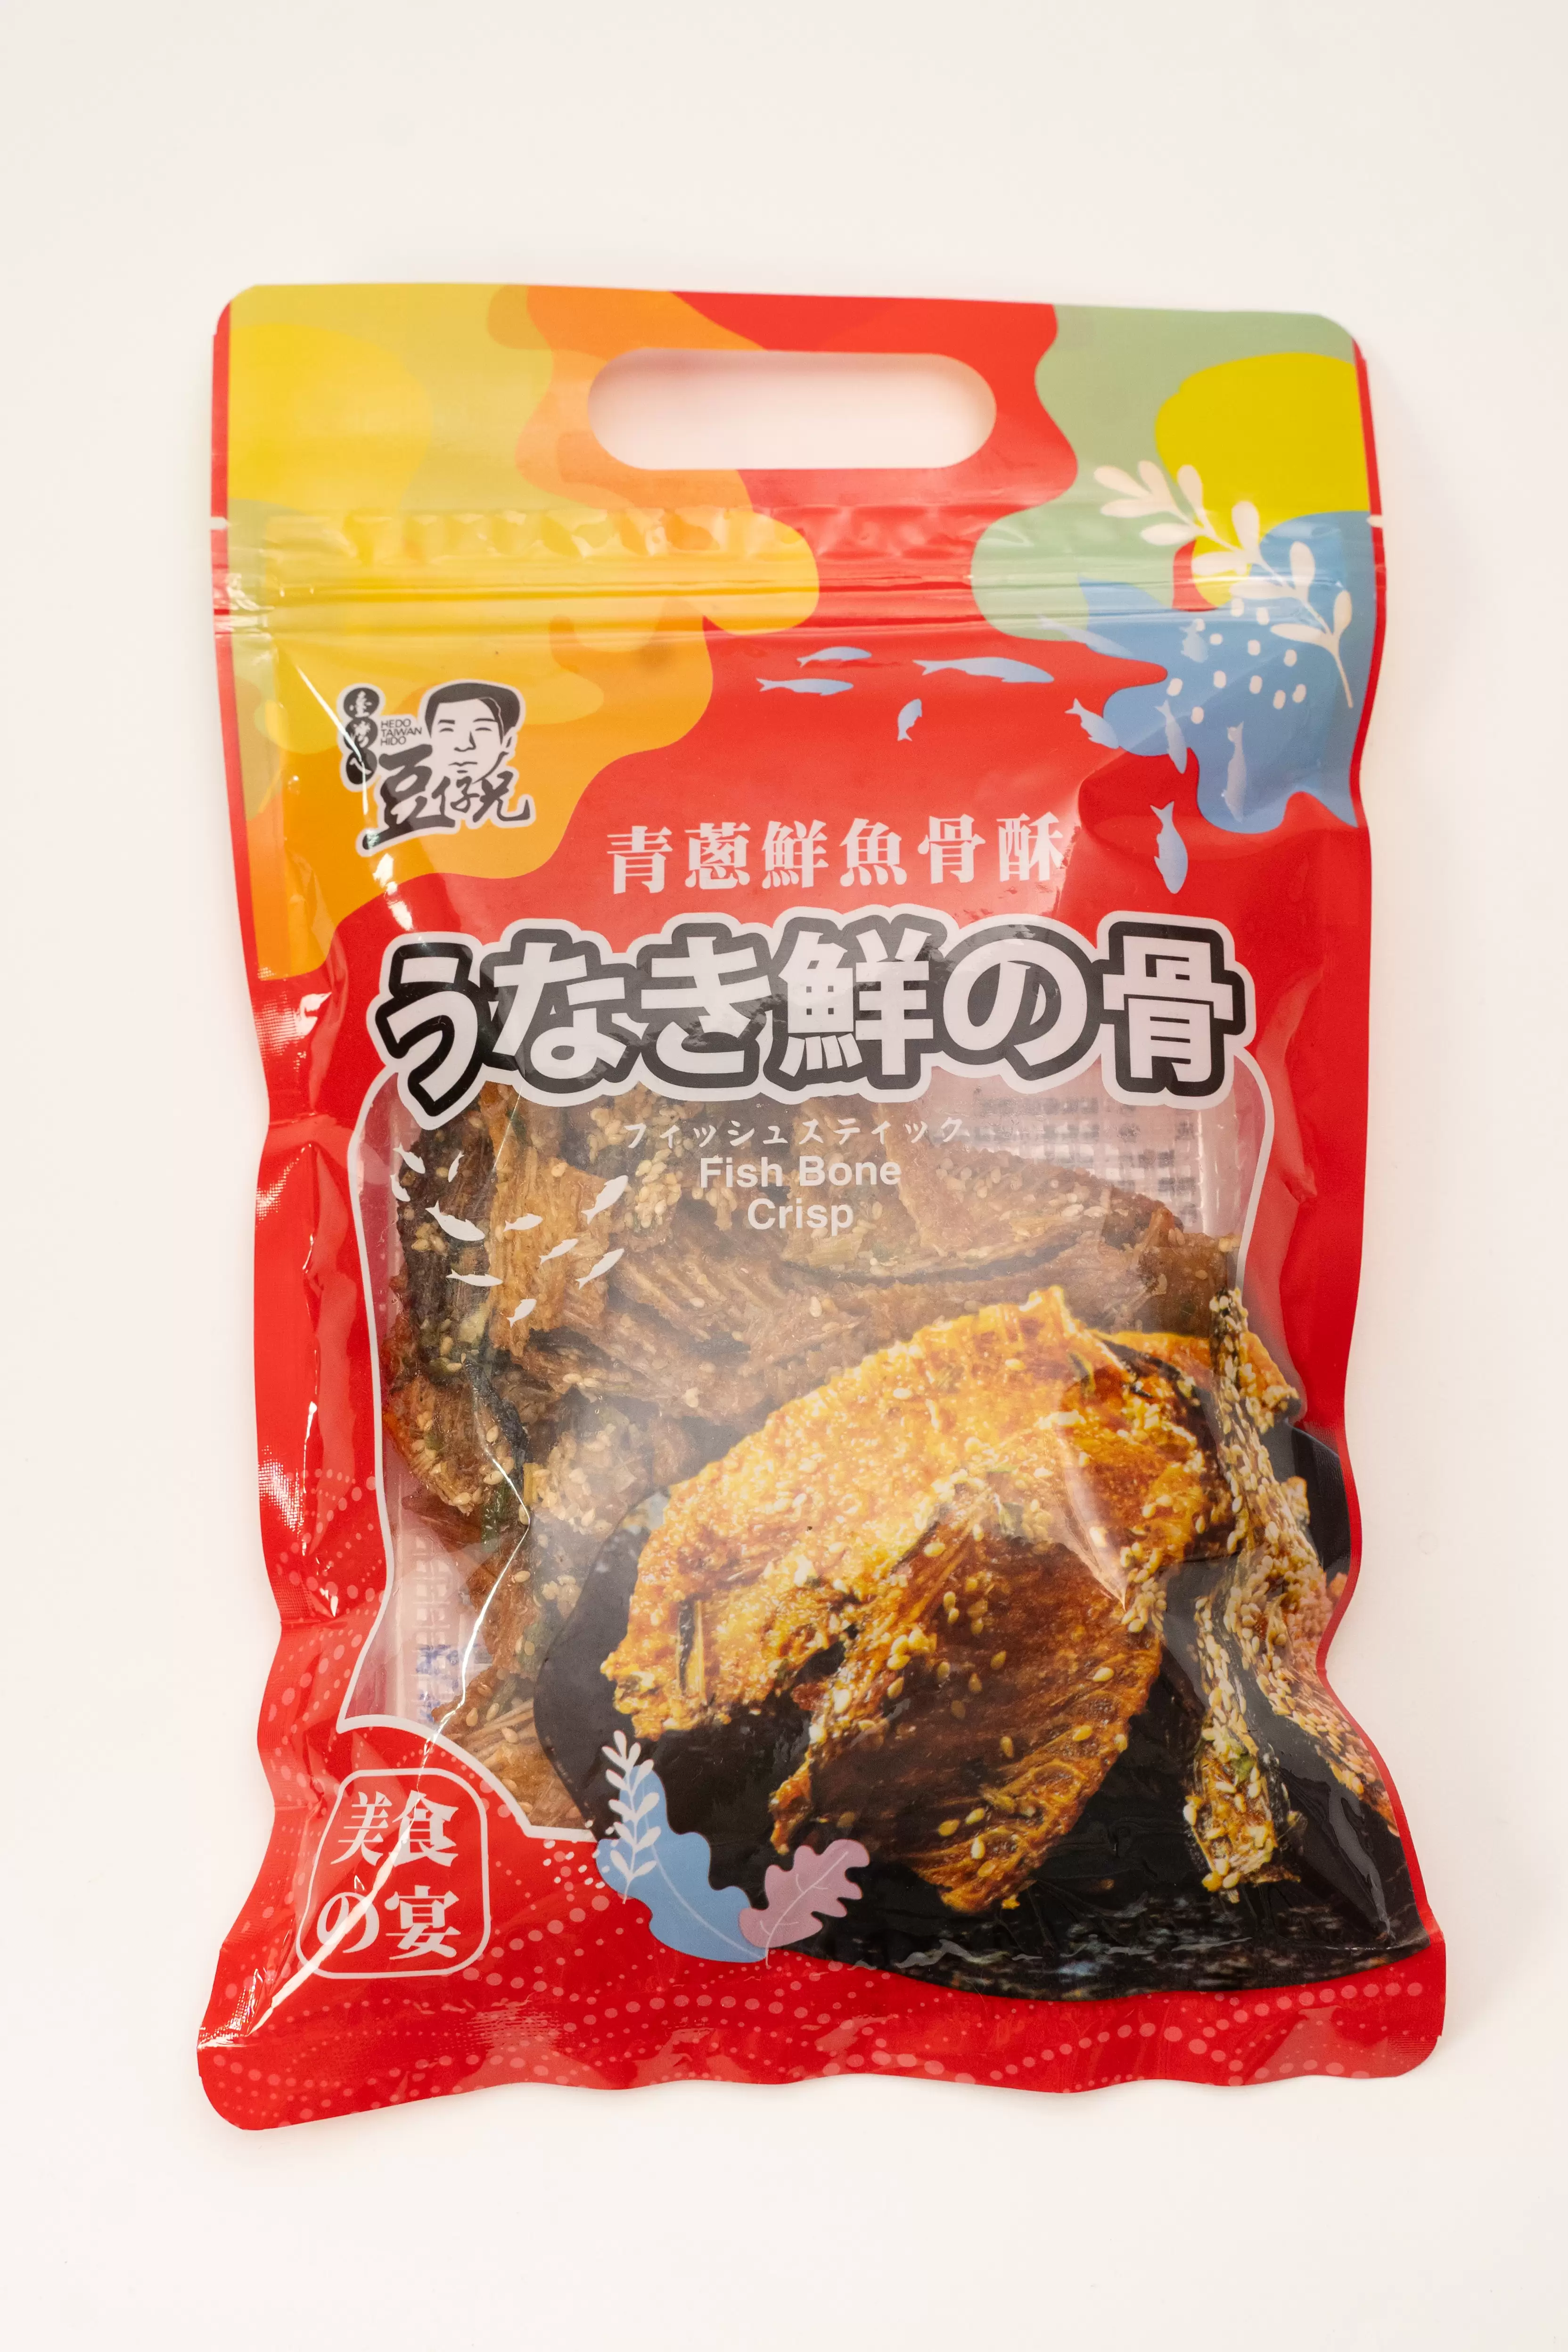 鮮魚骨酥-150g